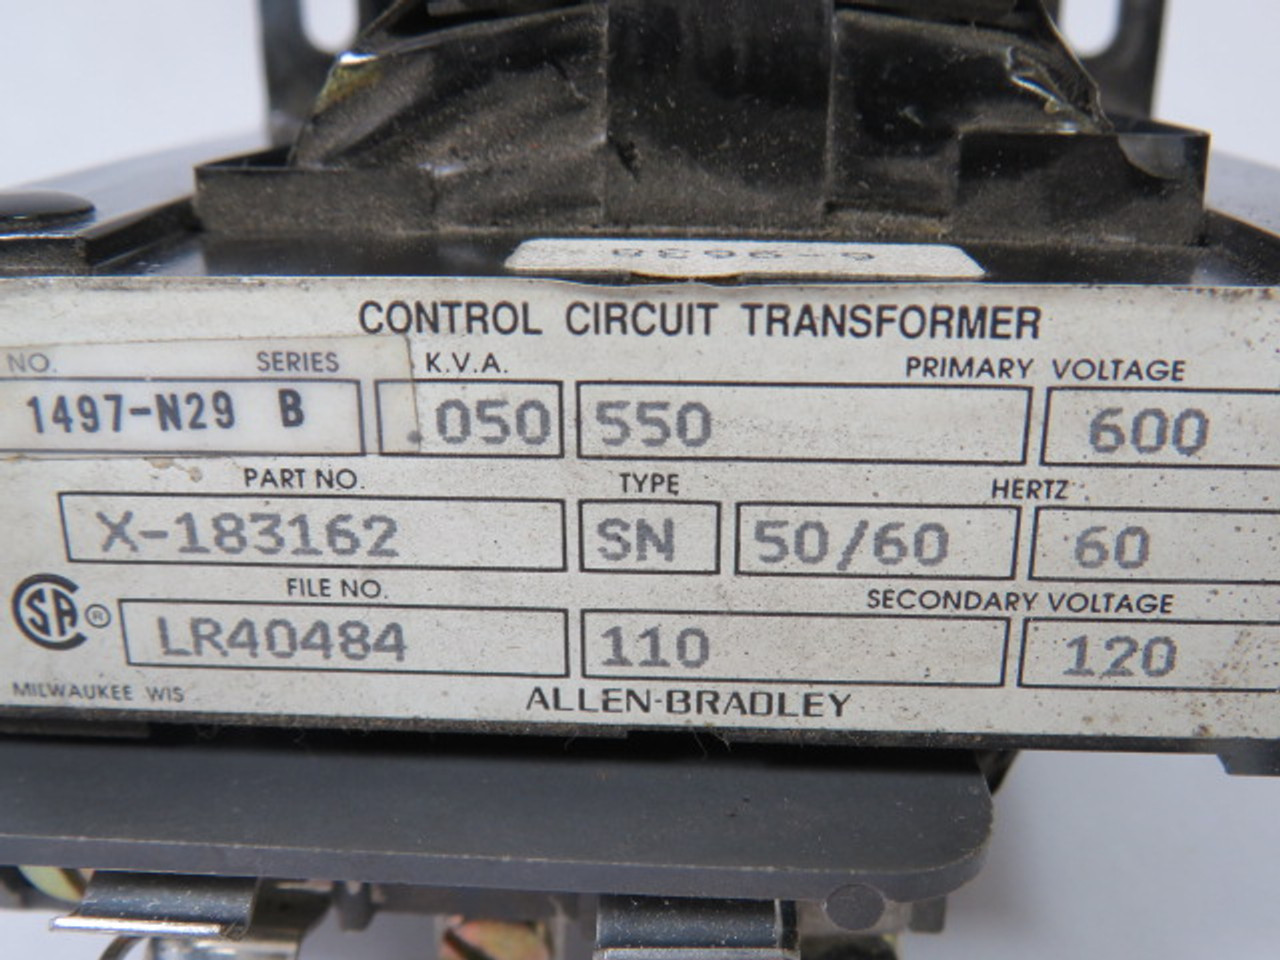 Allen-Bradley 1497-N29 Ser B Transformer .050KVA Pri 600V Sec 120V 60HZ USED